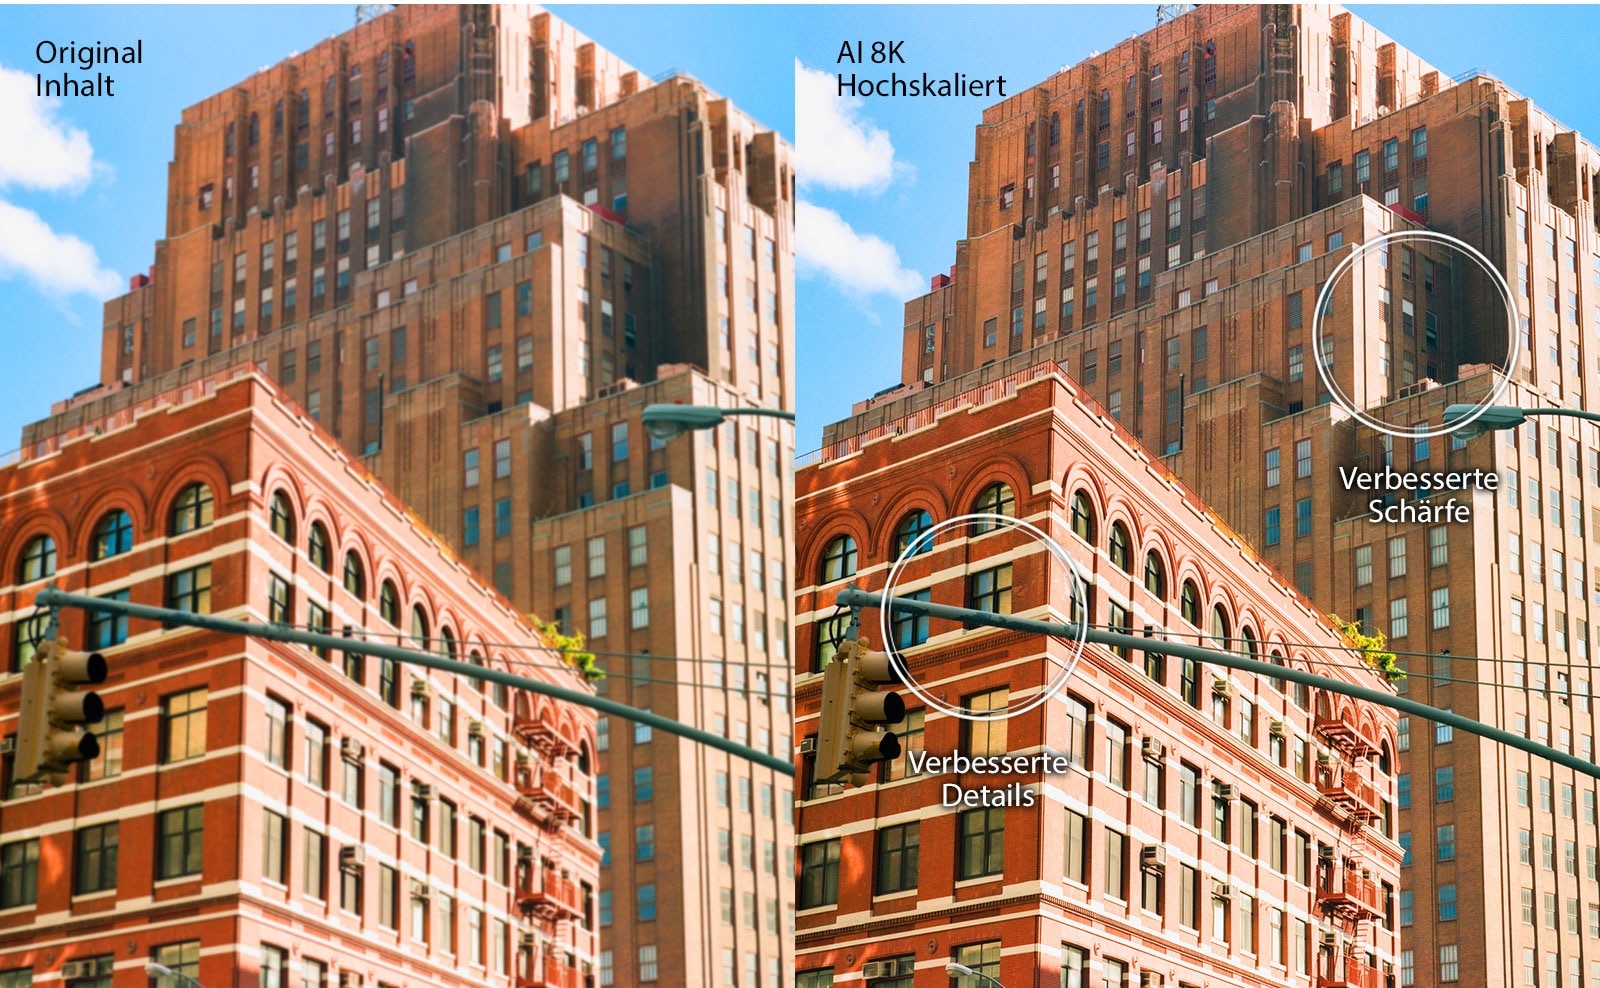 Nebeneinander befindliche Bilder von roten Backsteingebäuden in einer Stadt. Das Bild auf der rechten Seite ist schärfer und klarer, was zeigt, wie das Bild mittels AI-8K-Upscaling verbessert werden kann.